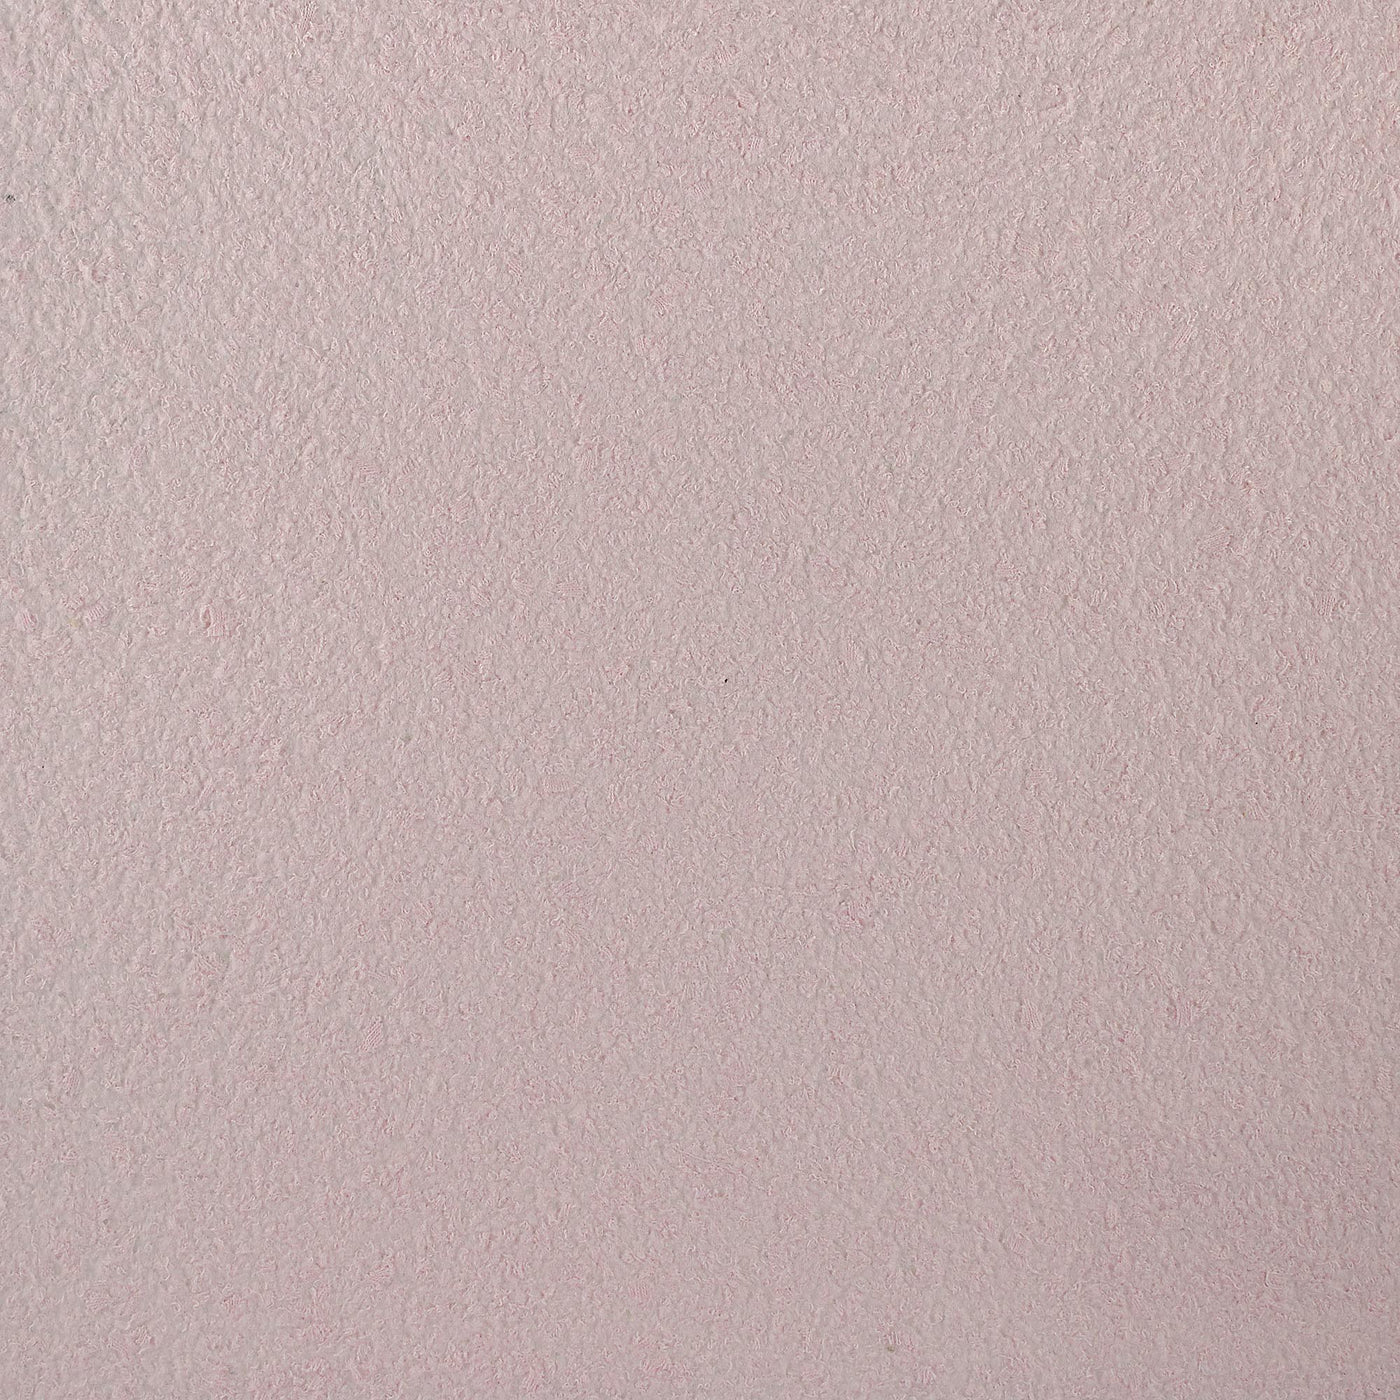 Cotton plaster color decor pink